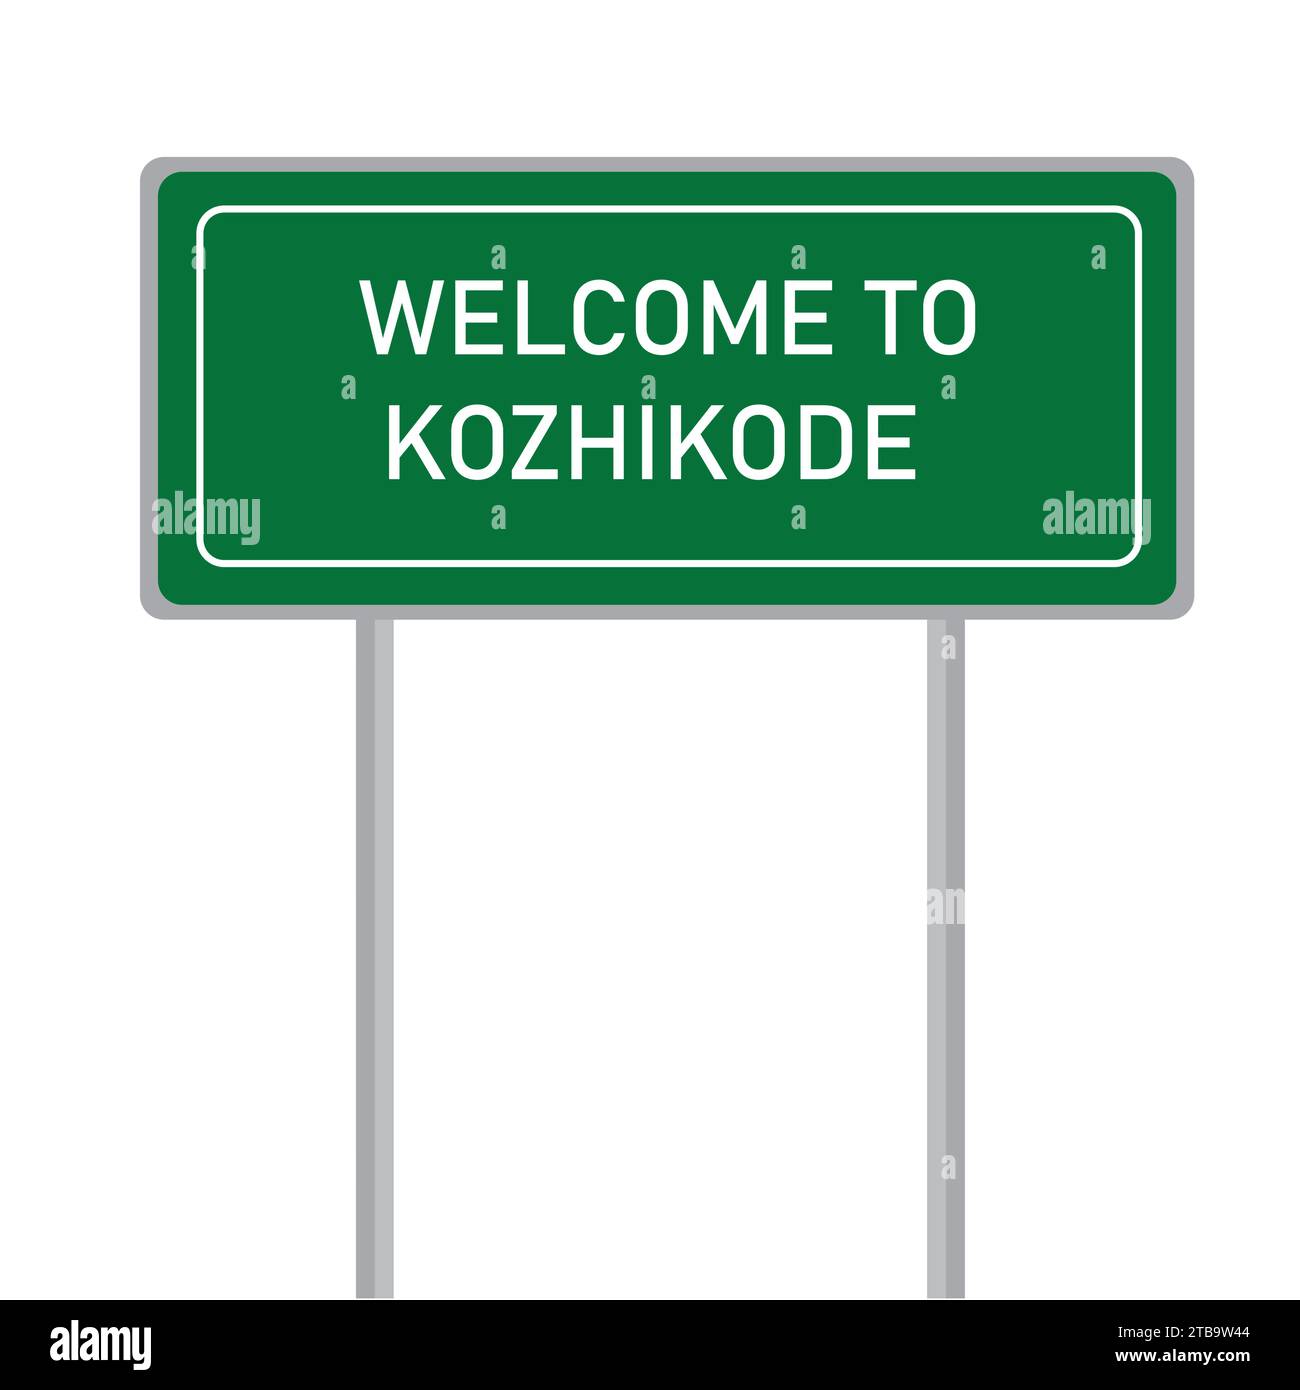 Willkommen bei Kozhikodu Namensschild Vektor Illustration Stock Vektor